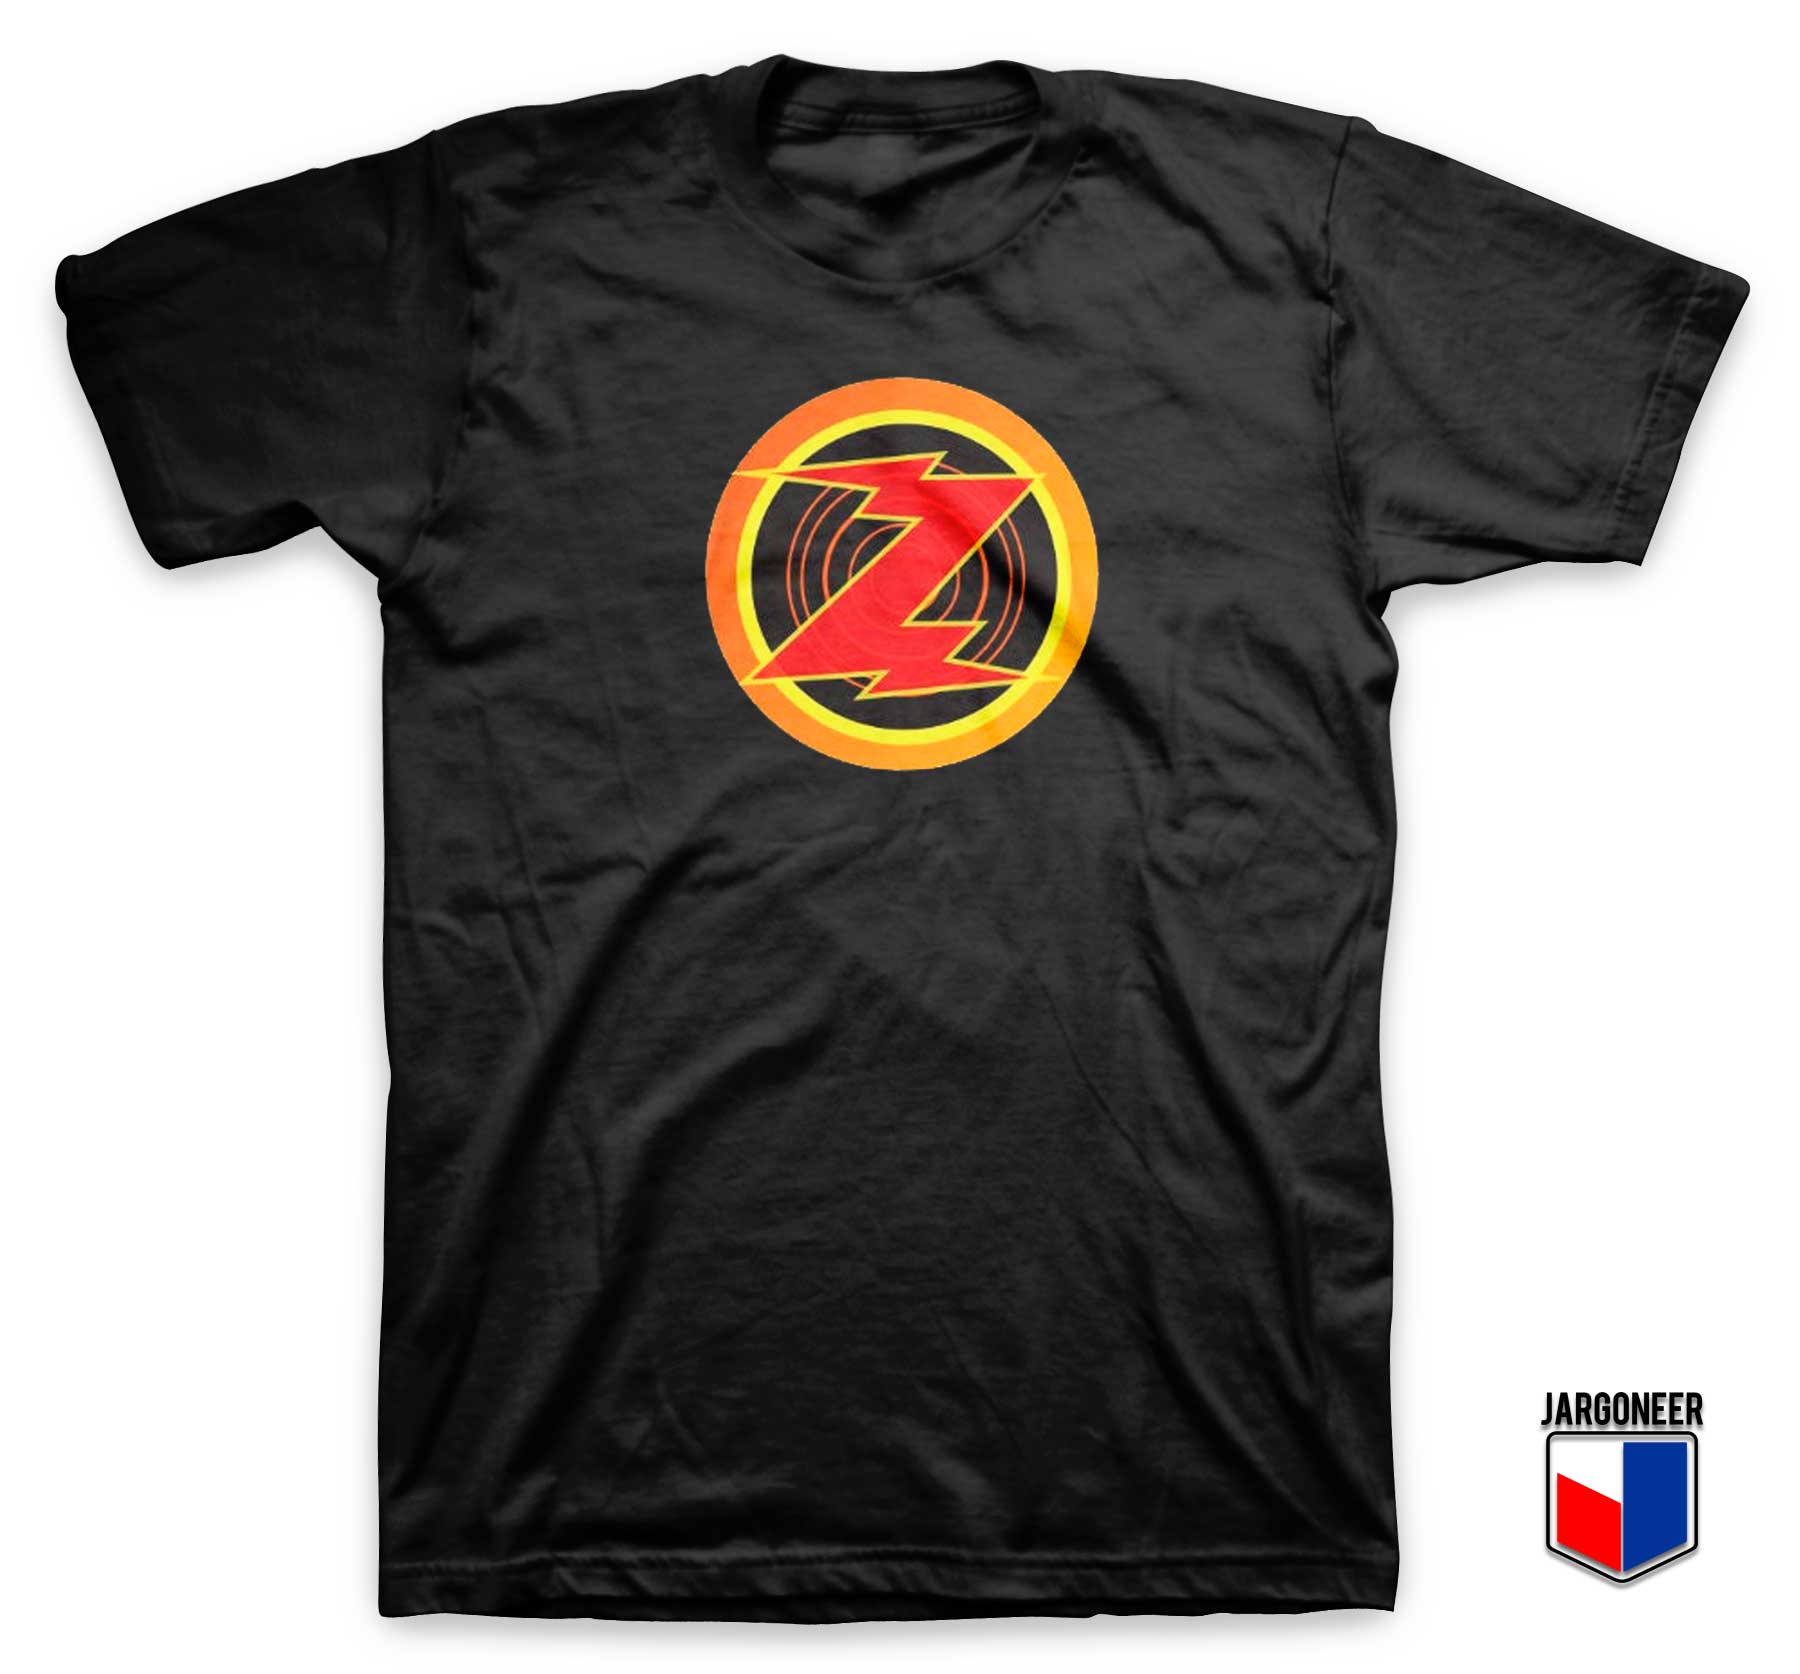 Emperor Zurg Toy Story T Shirt - Shop Unique Graphic Cool Shirt Designs